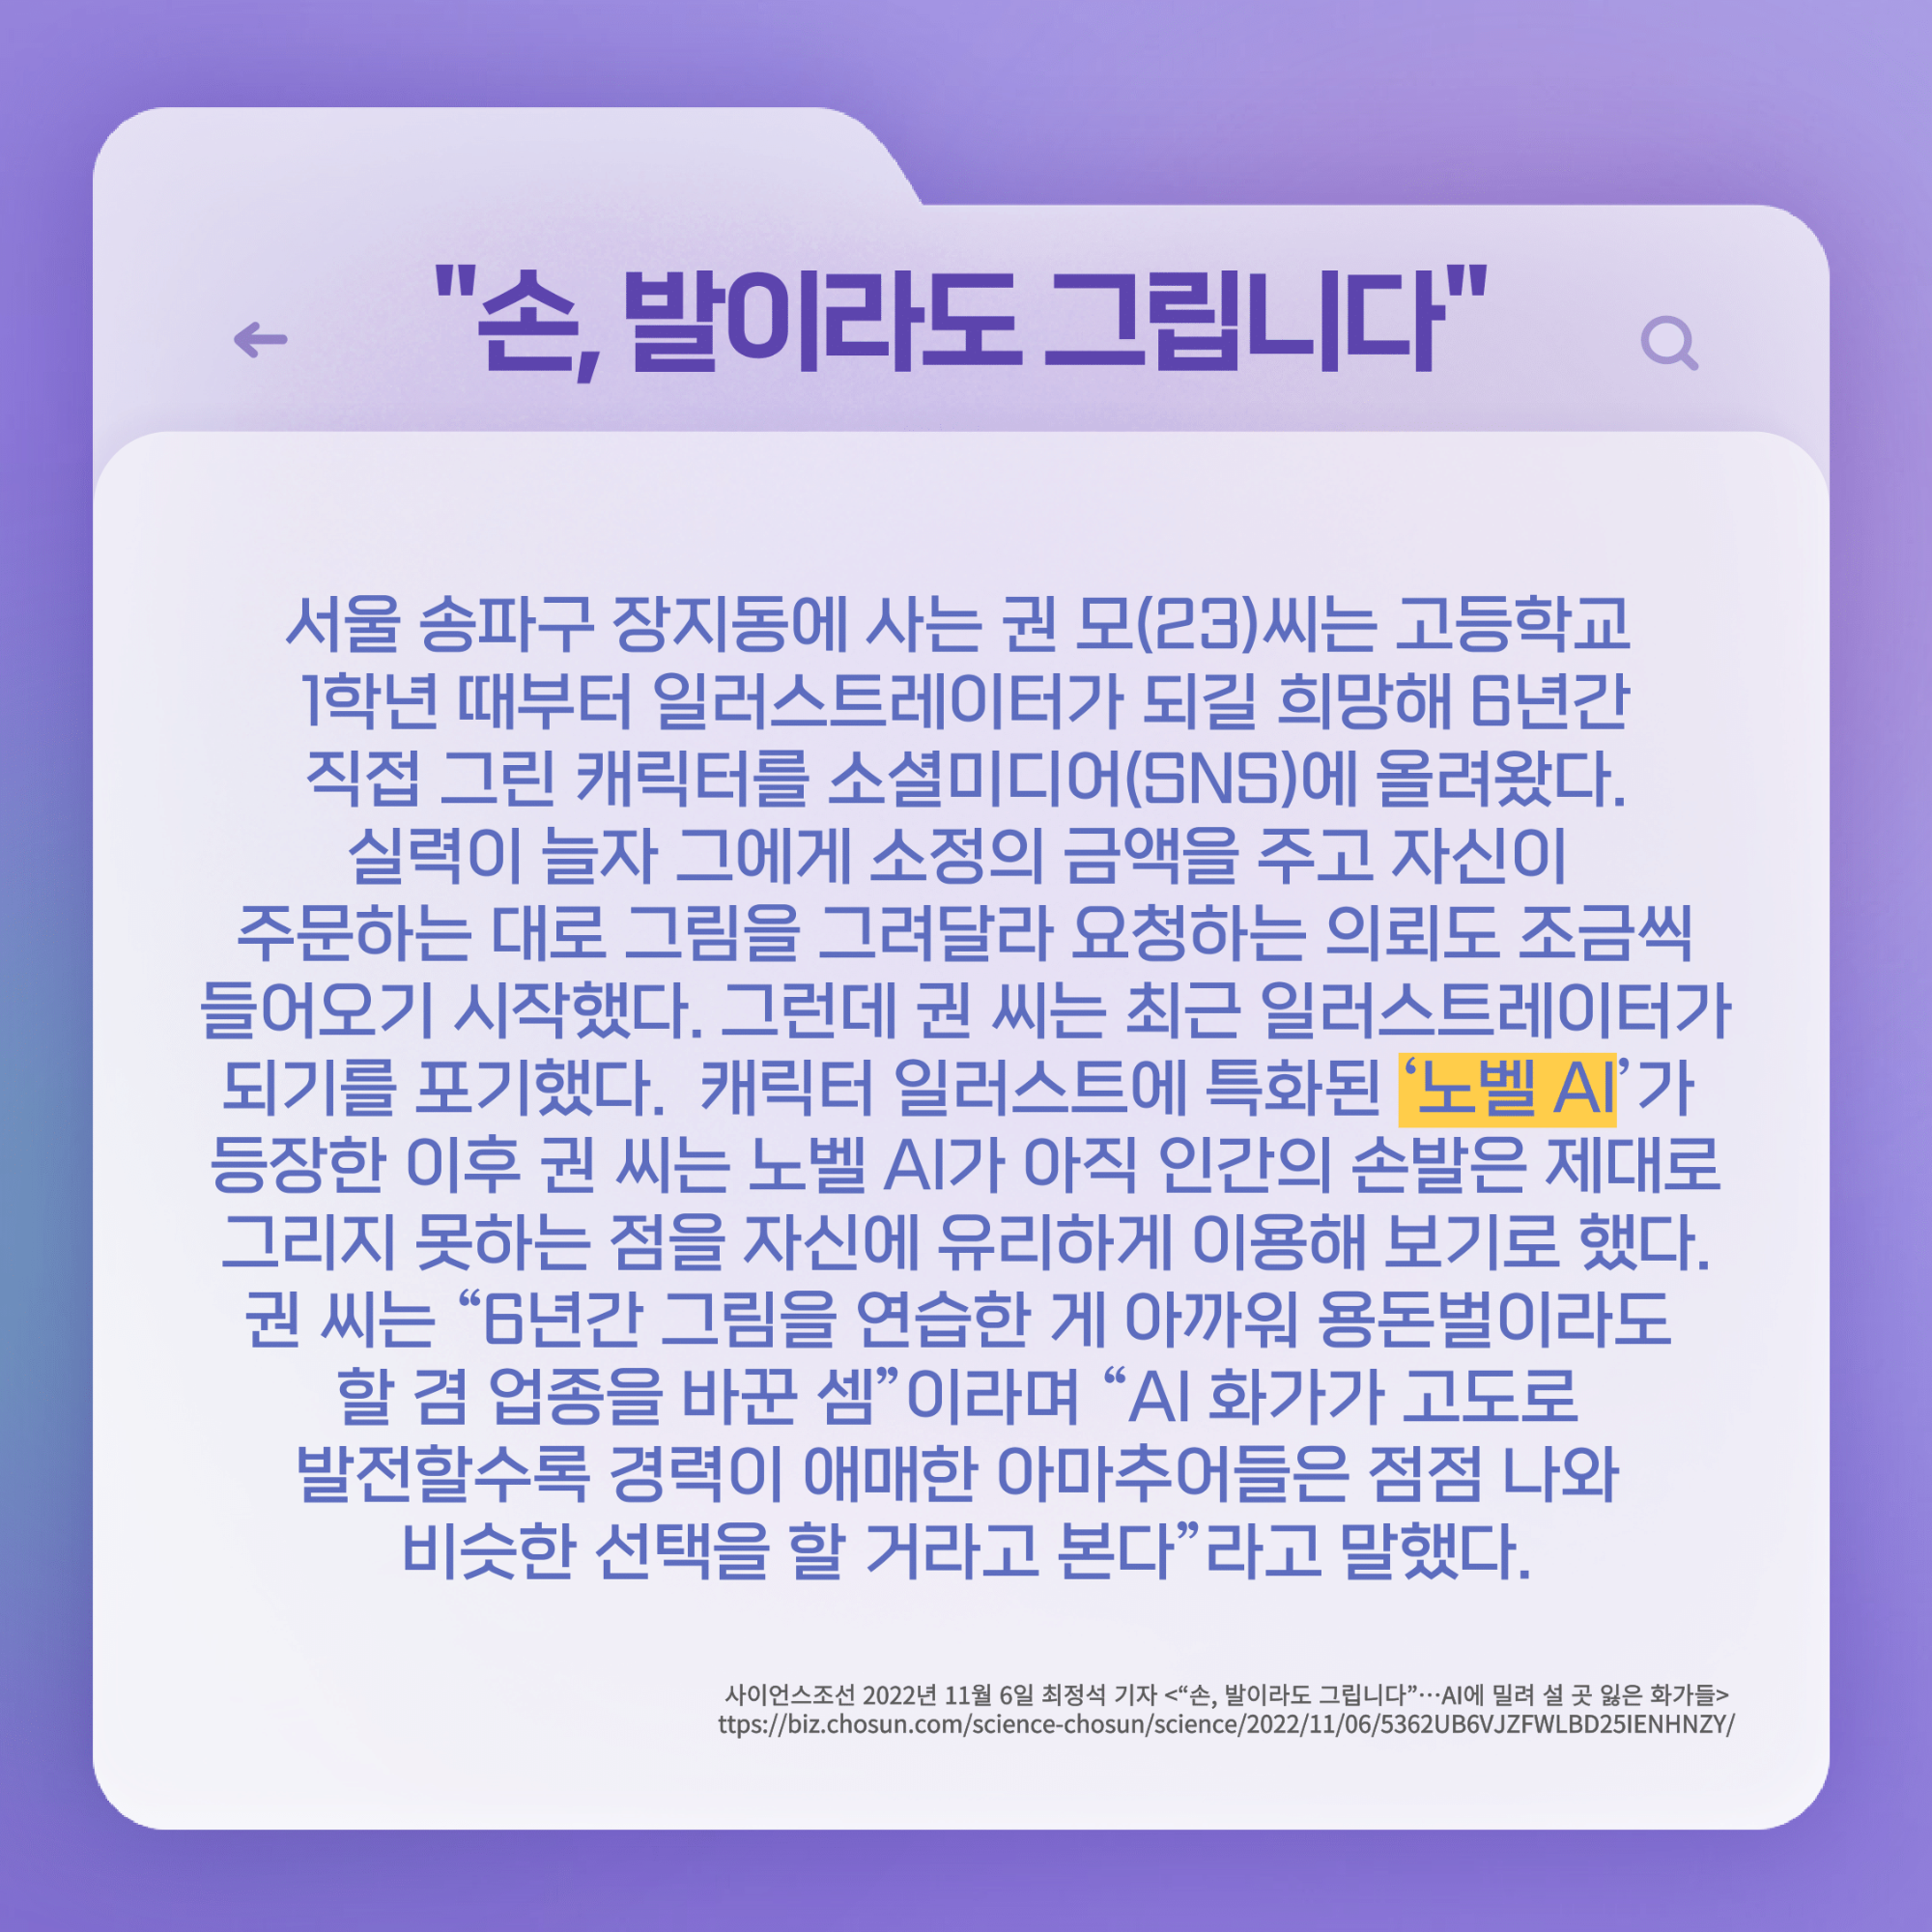 167호 K-웹툰의 노동 문제 심각성-4.png